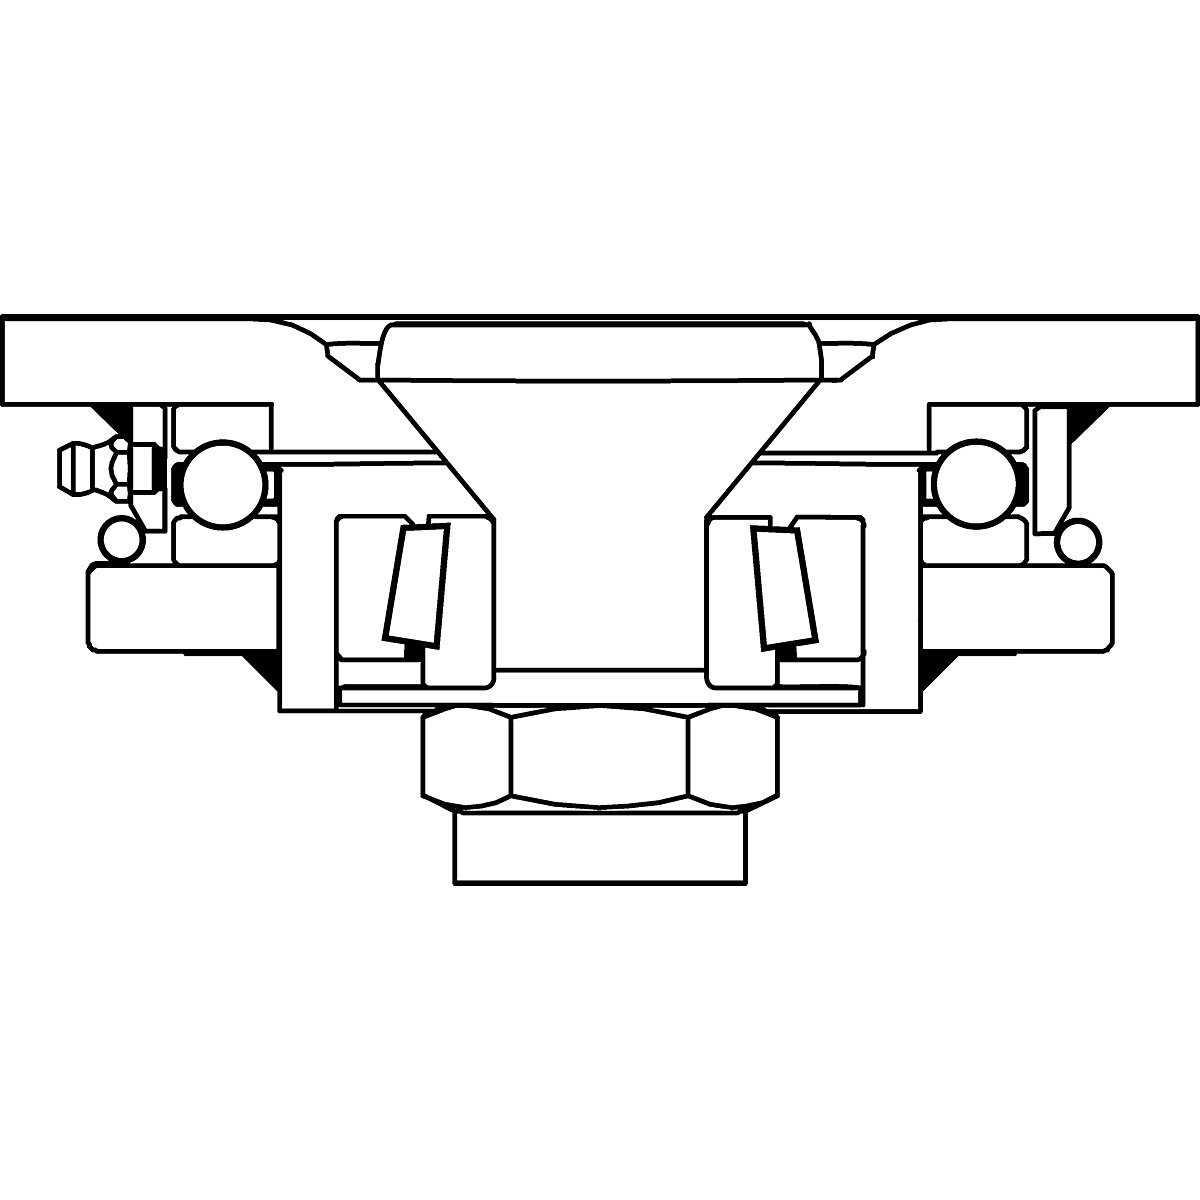 Cubierta de poliuretano, dimensiones de la placa 138 x 110 mm – Proroll (Imagen del producto 3)-2